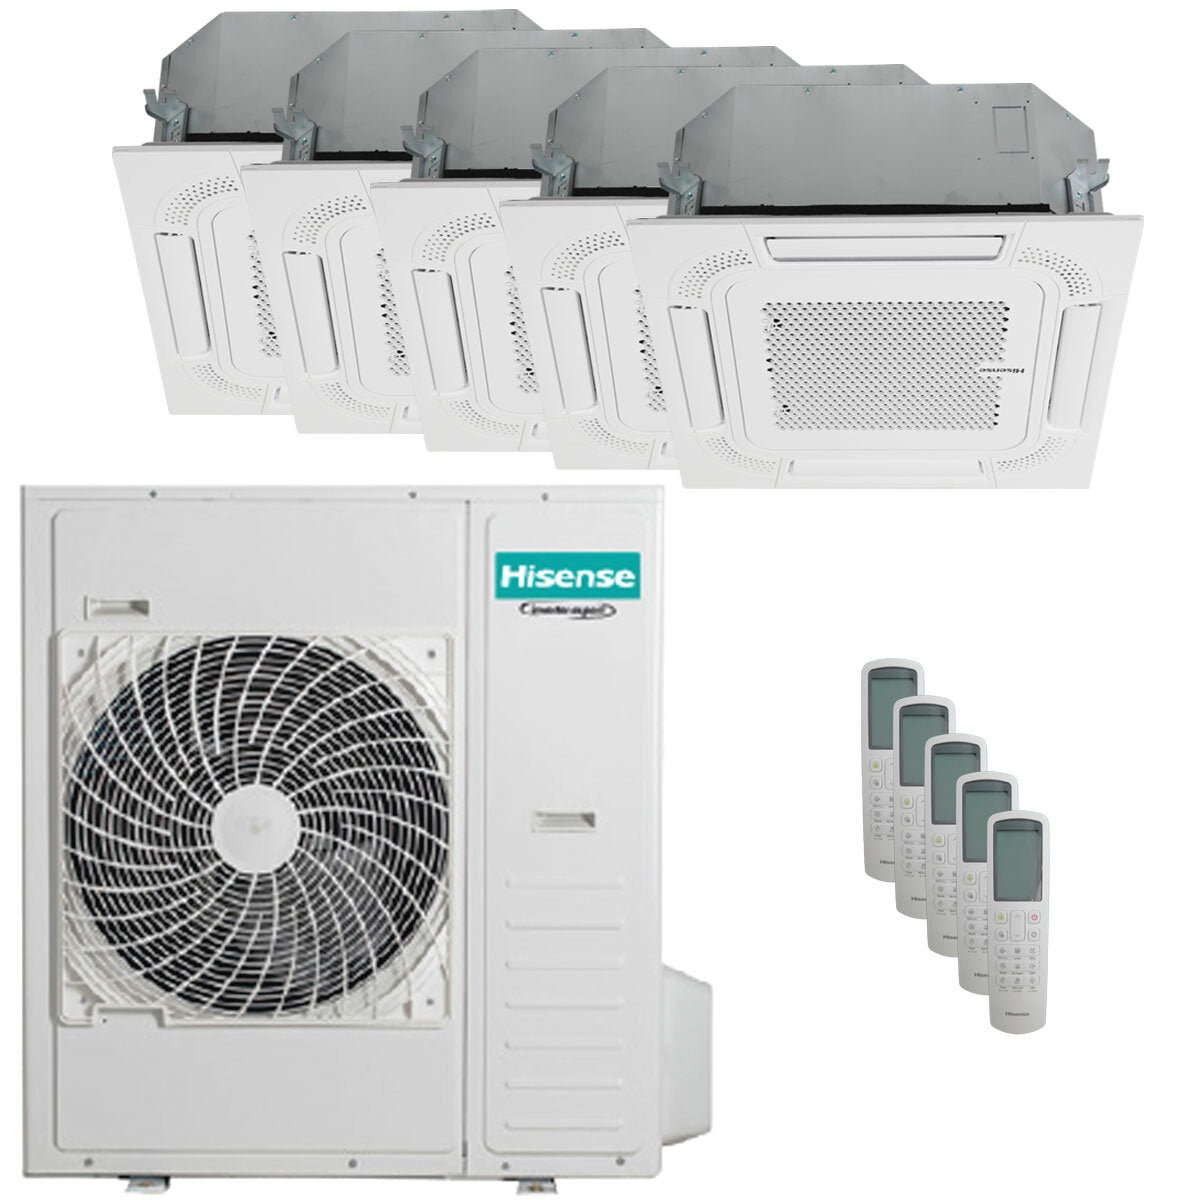 Hisense air conditioner ACT penta split 9000+9000+9000+9000+9000 BTU inverter outdoor unit 12.5 kW